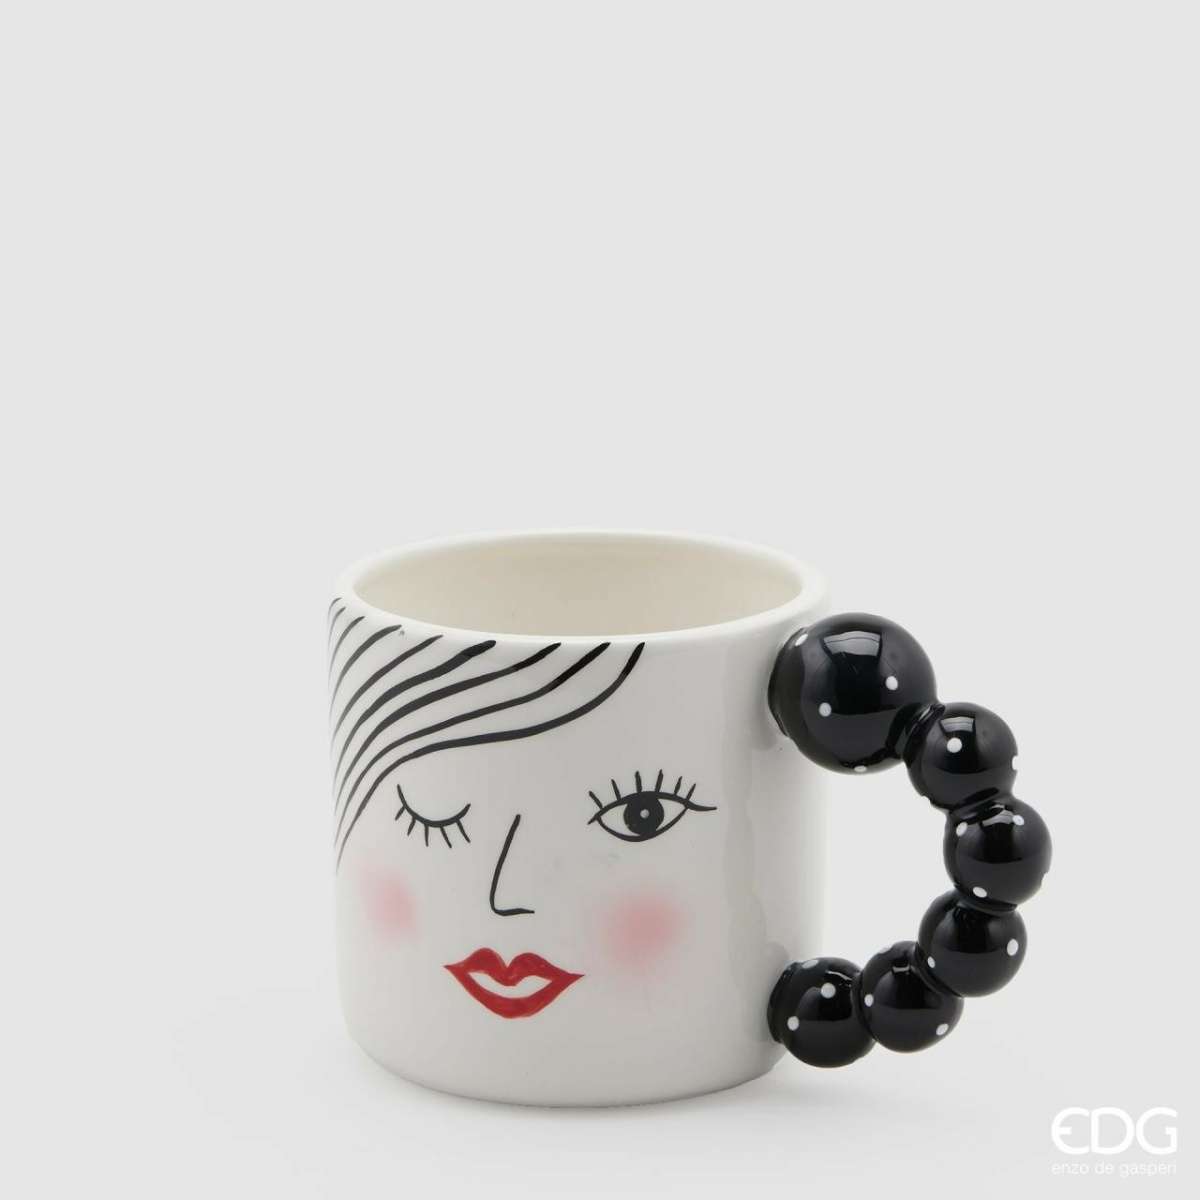 Immagine del prodotto Mug Lady con manico in Perle a Pois h10 x ø10 cm | EDG Enzo De Gasperi